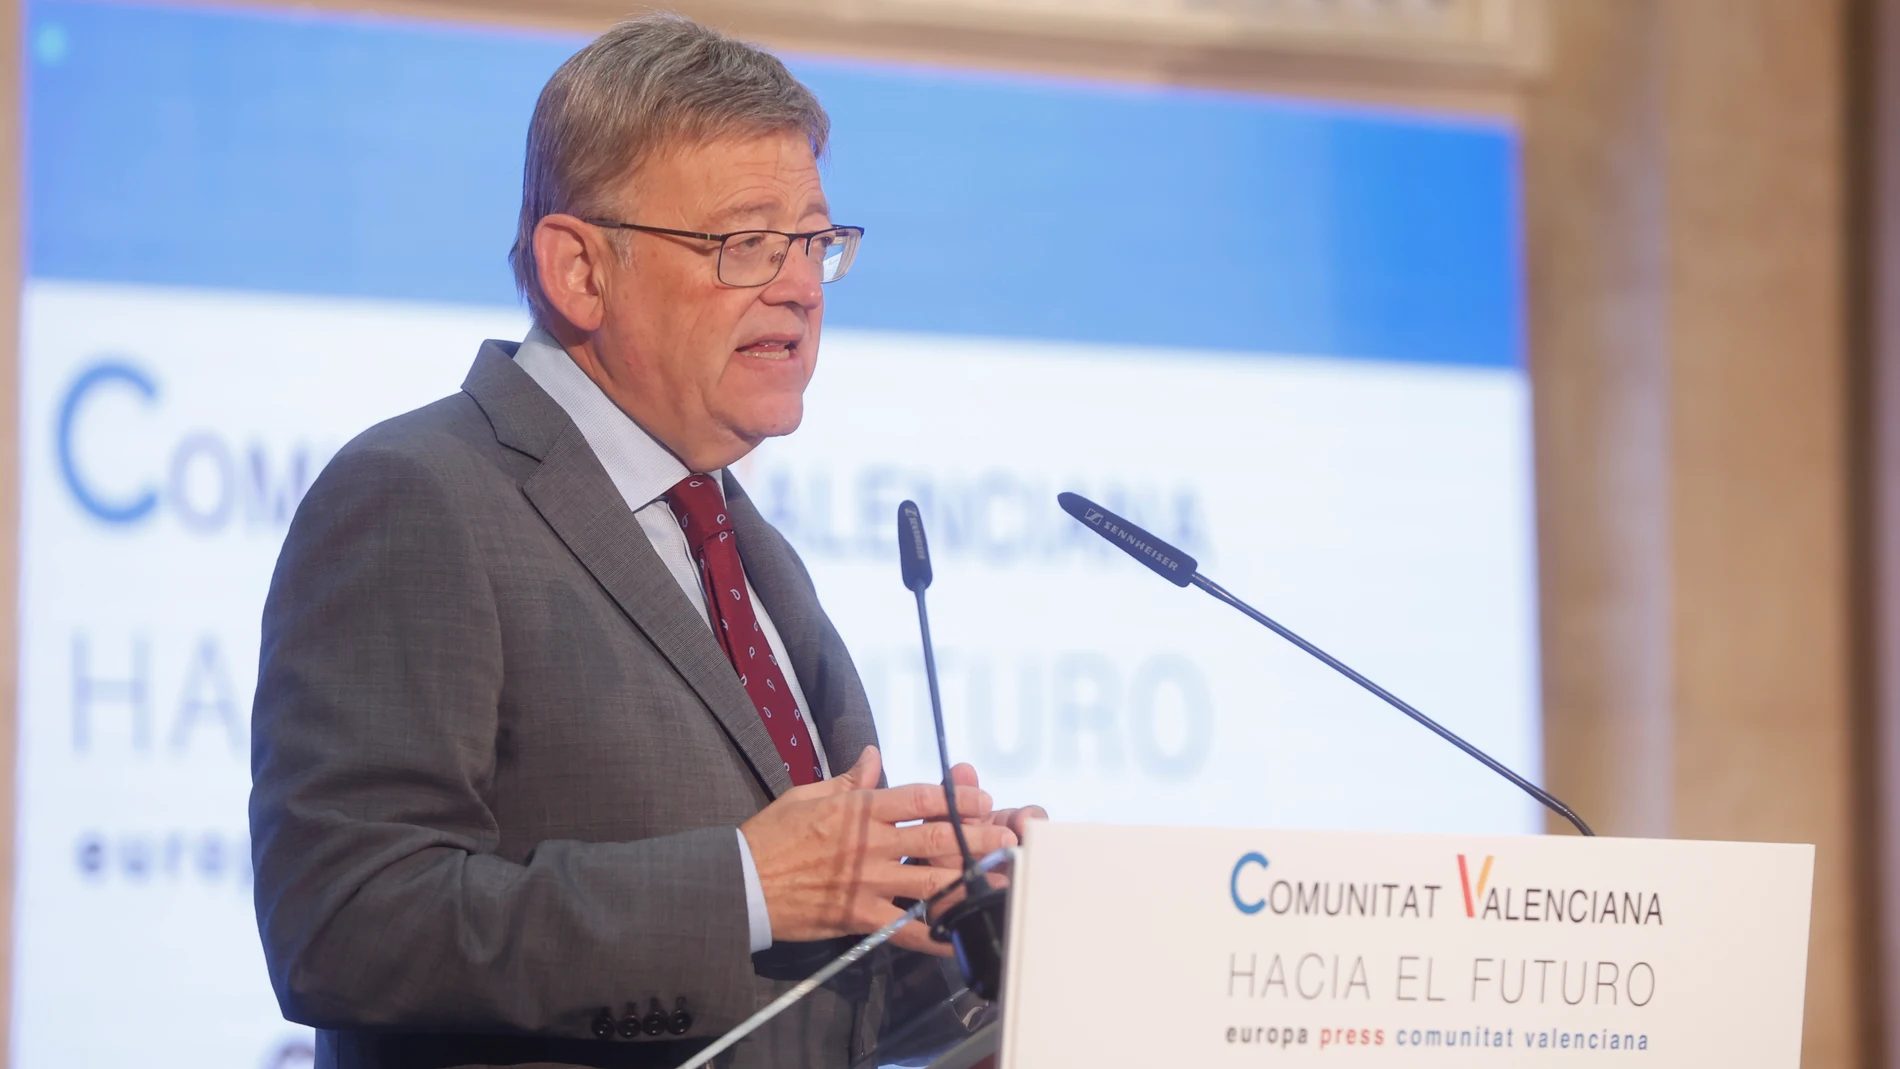 El president de la Generalitat, Ximo Puig, en la jornada 'Comunitat Valenciana Hacia el futuro' de Europa Press